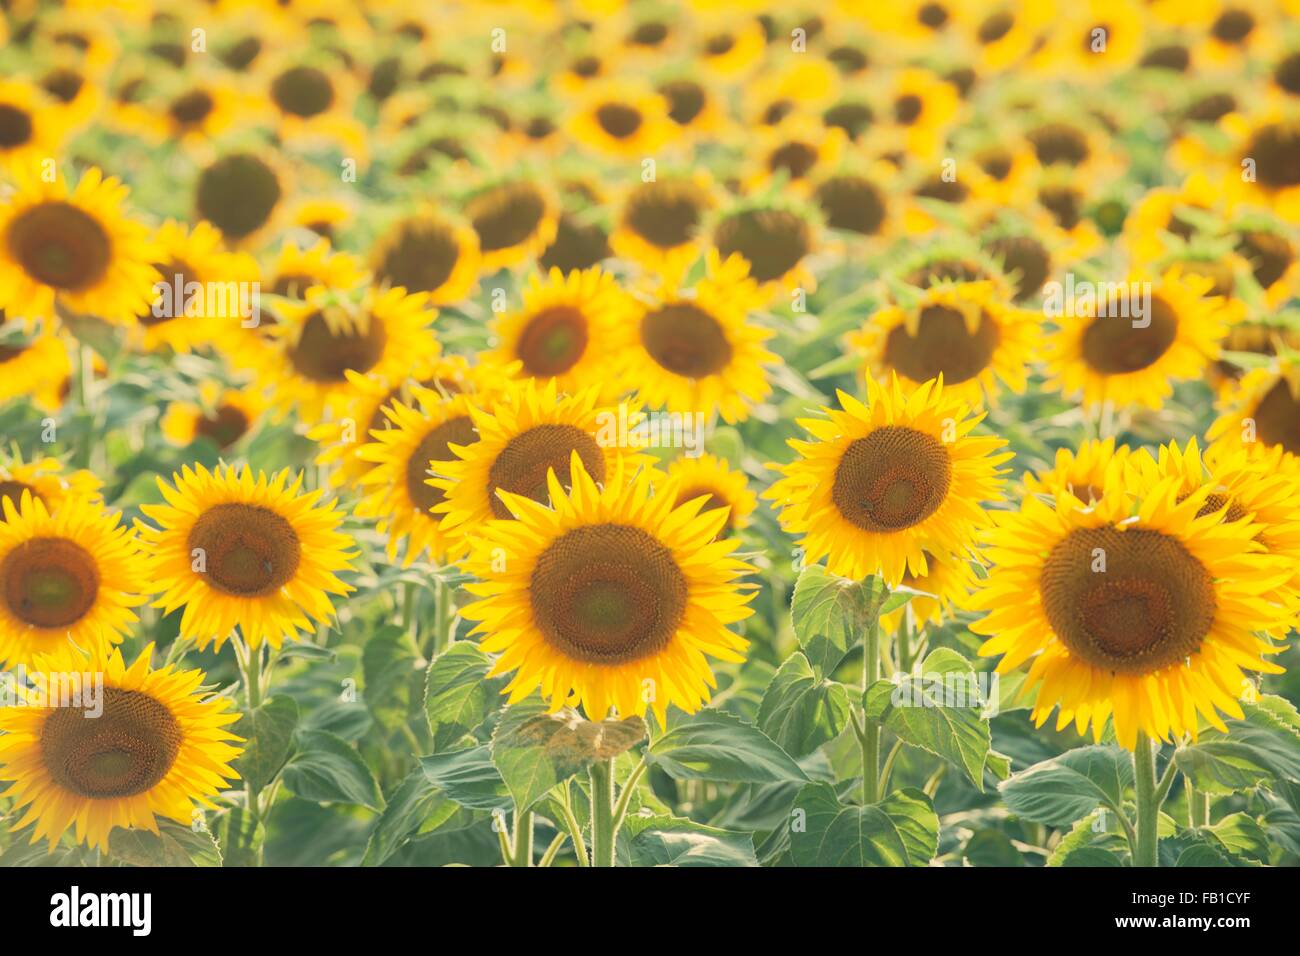 Full frame view of sunflower field Stock Photo